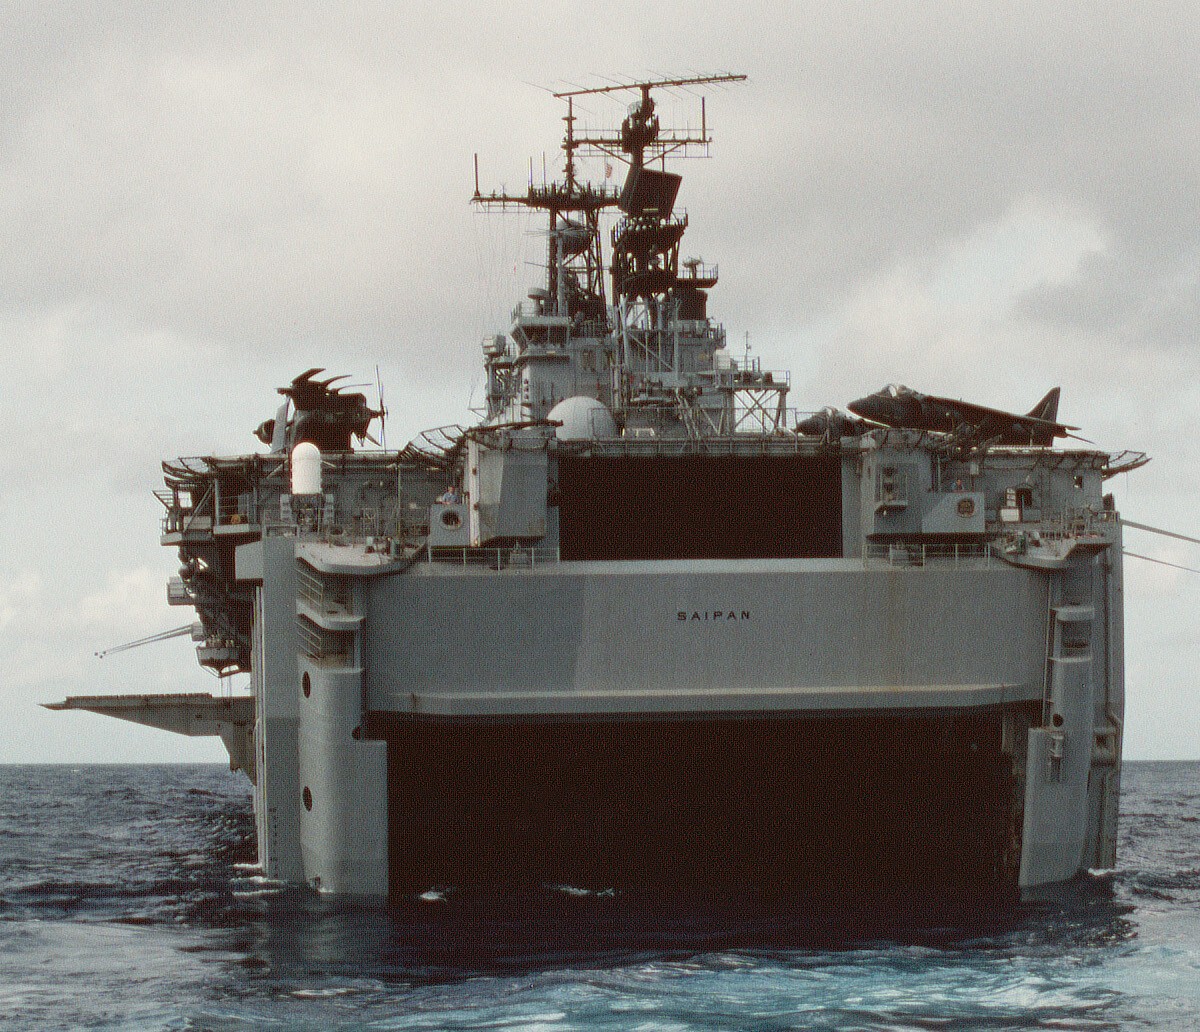 lha-2 uss saipan tarawa class amphibious assault ship us navy 22nd meu hmm-261 usmc operation sharp edge liberia 79